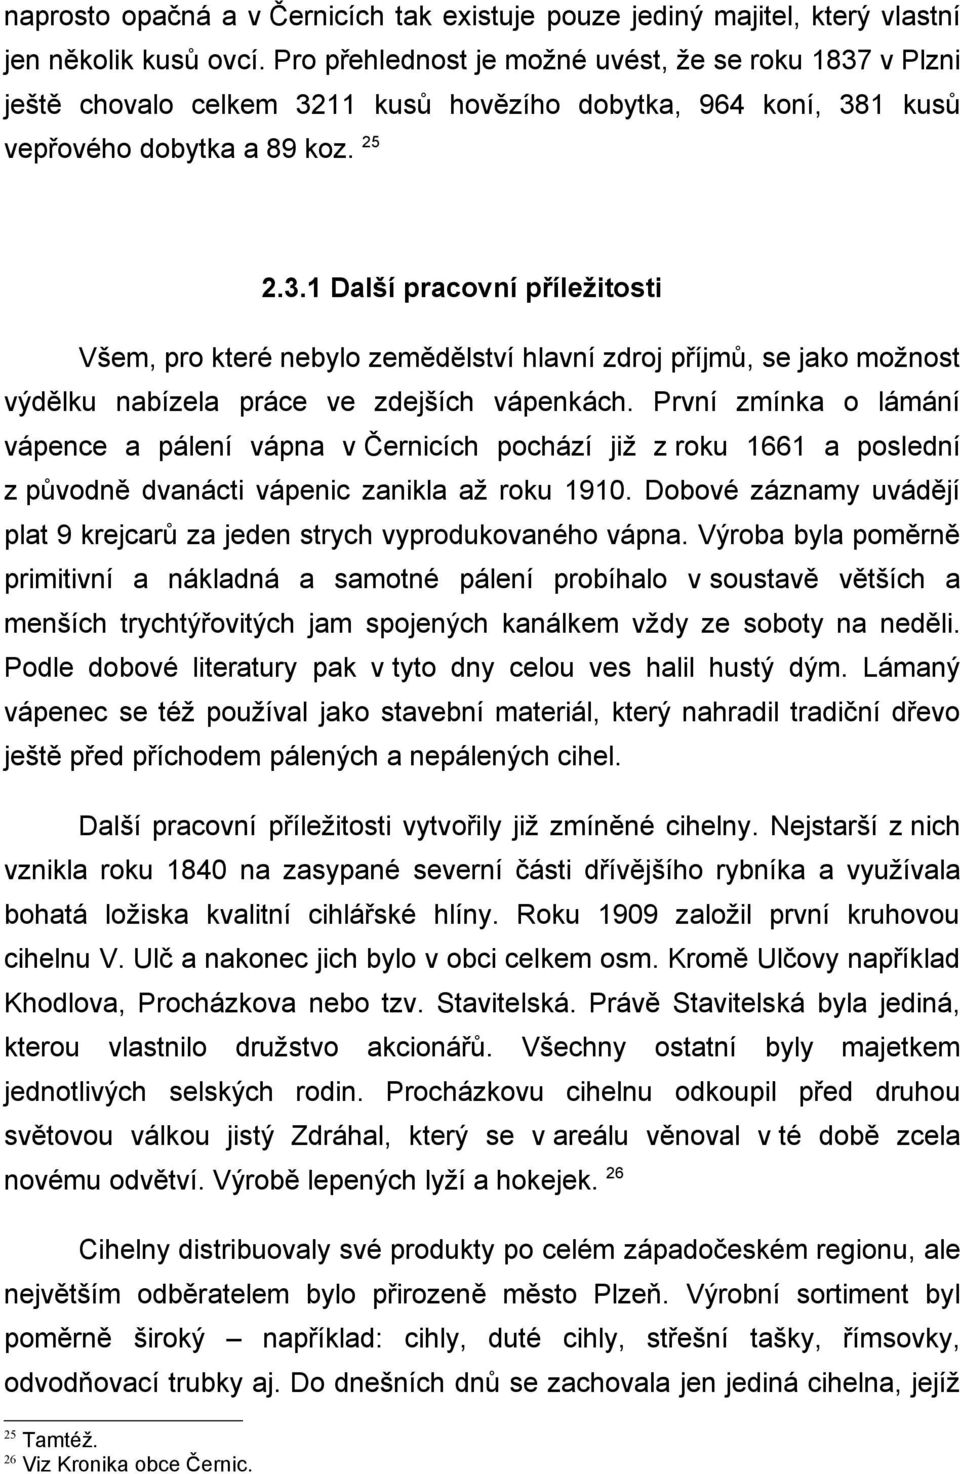 První zmínka o lámání vápence a pálení vápna v Černicích pochází již z roku 1661 a poslední z původně dvanácti vápenic zanikla až roku 1910.